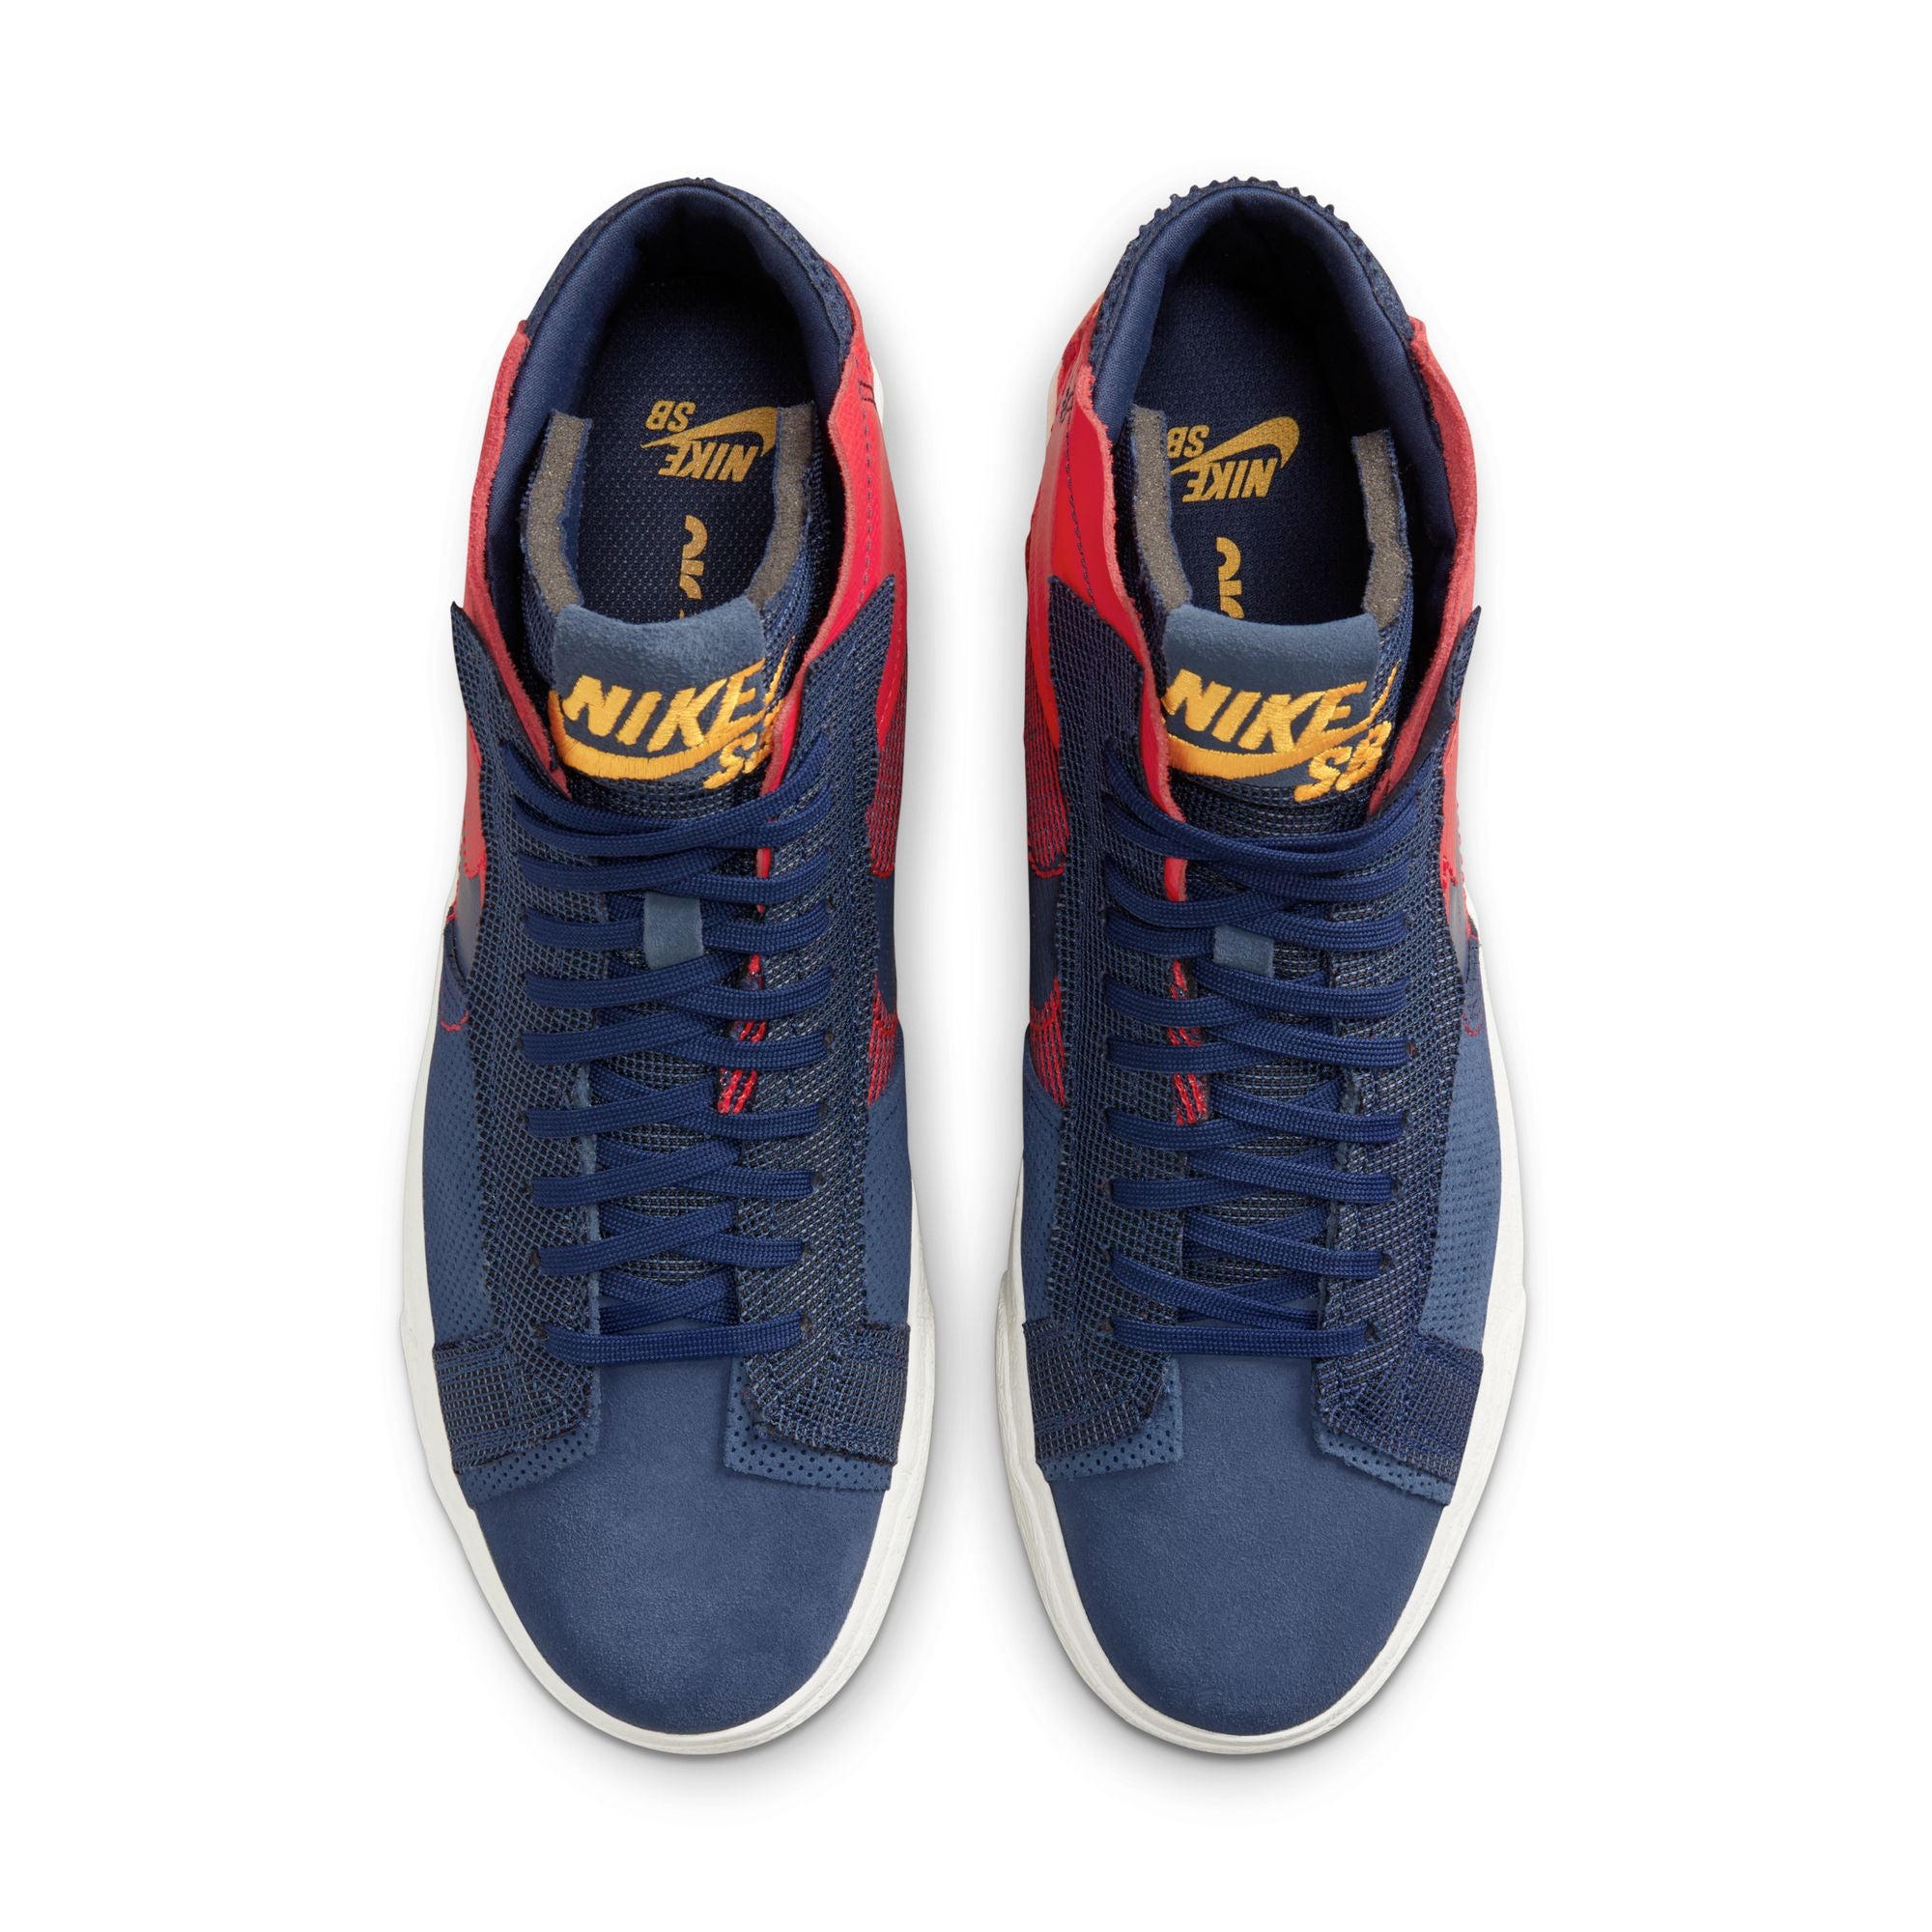 Nike SB Blazer Mid Premium Shoes - University Red/Midnight Navy